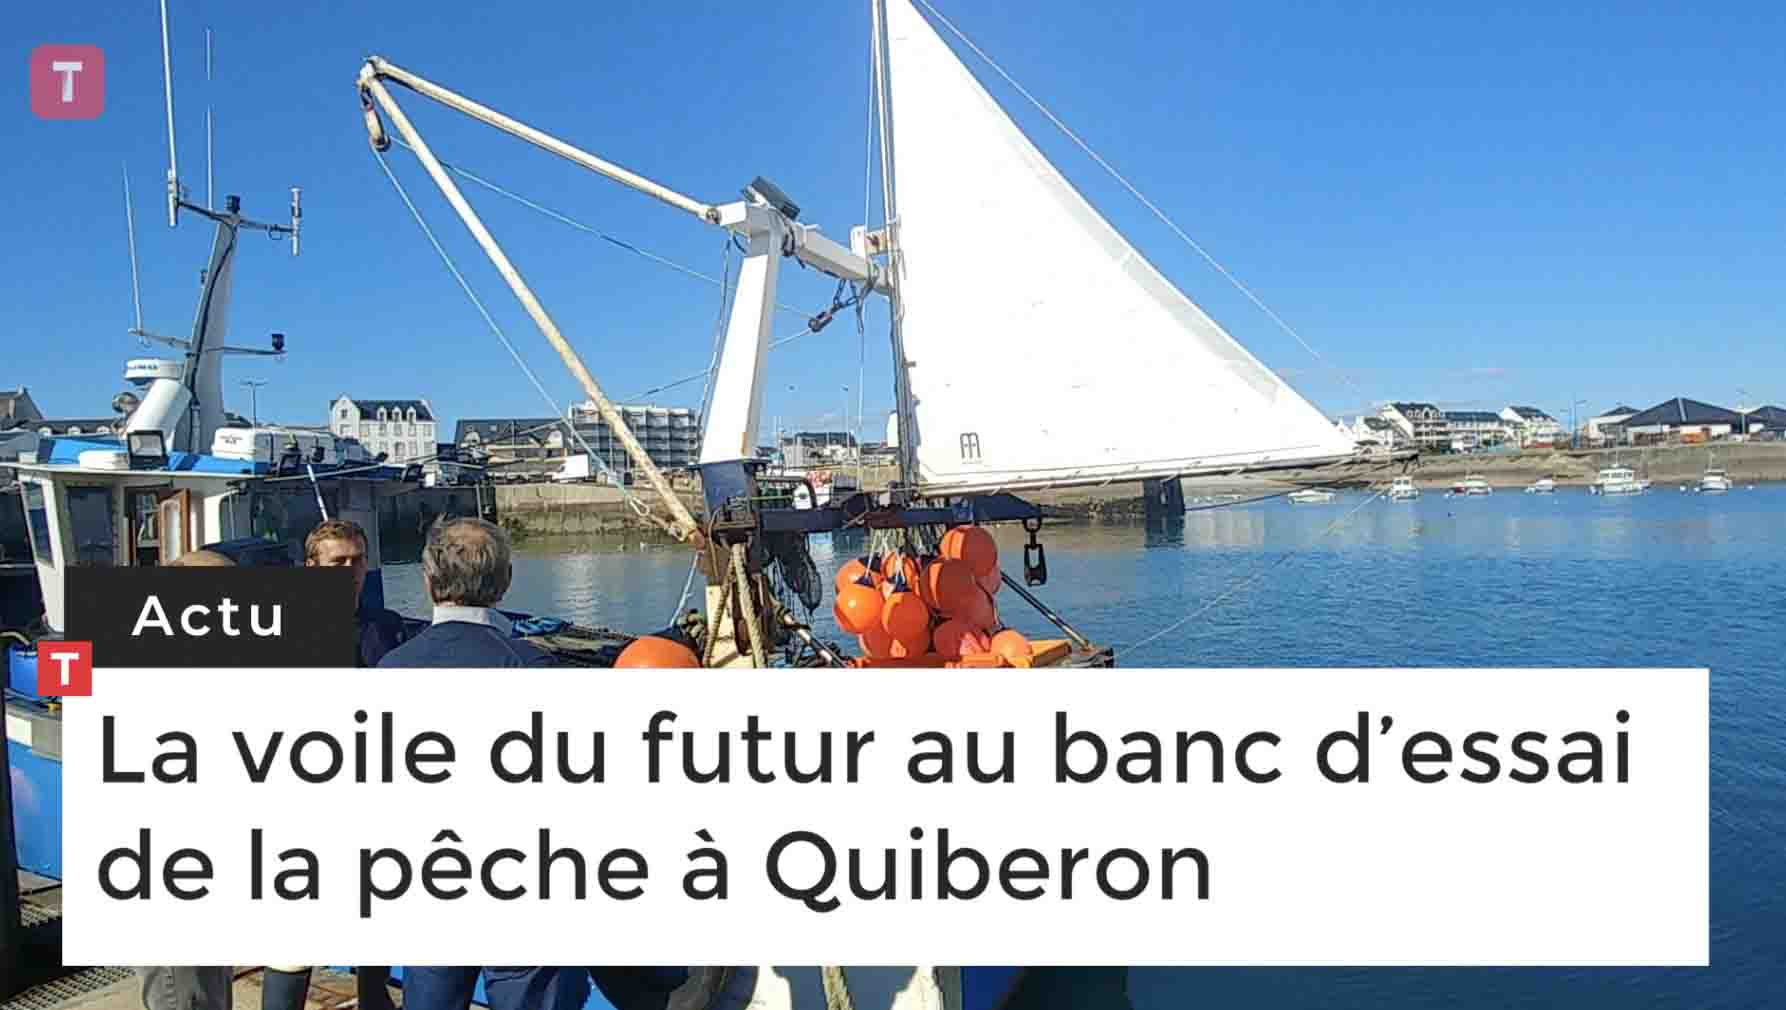 La voile du futur au banc d’essai de la pêche à Quiberon (Le Télégramme)